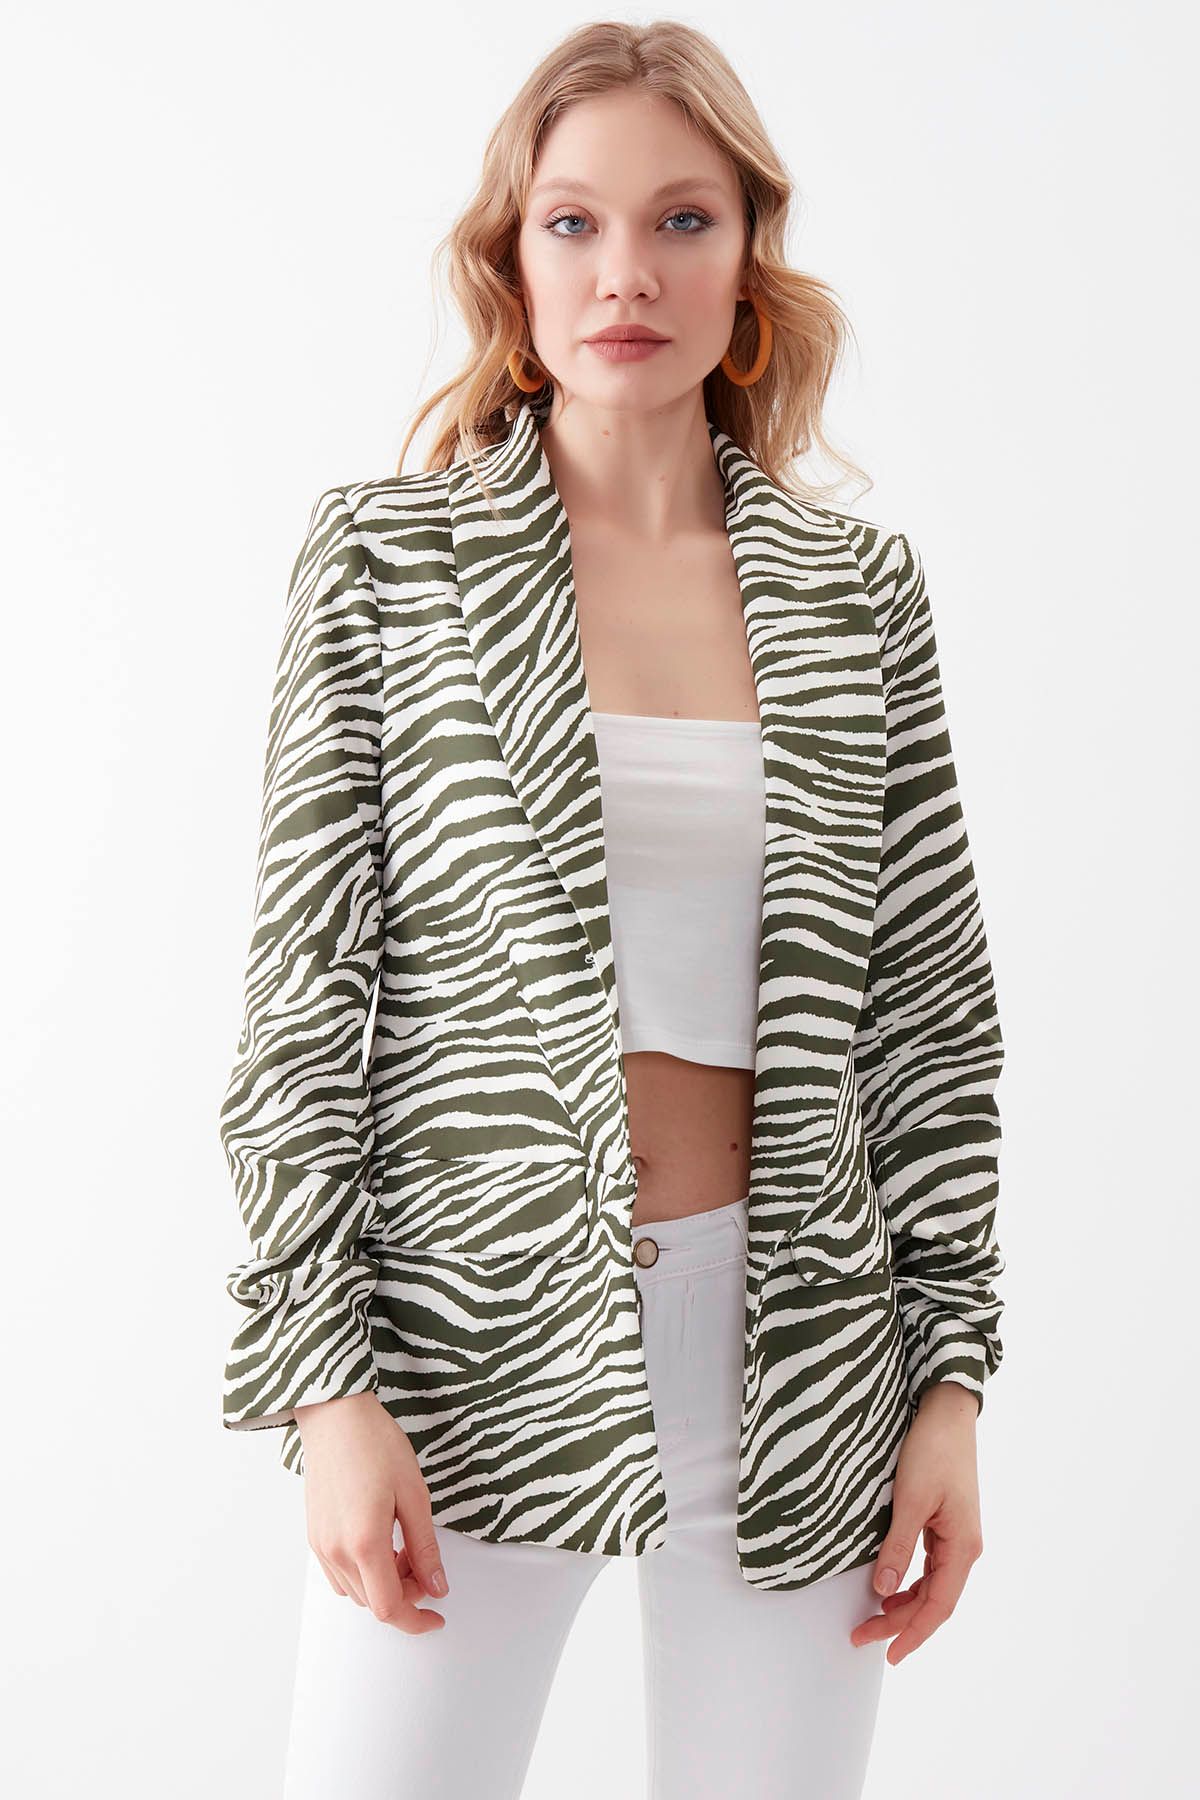 Vitrin Uzun Yaka Detaylı Kol Büzgülü Zebra Desen Blazer Ceket